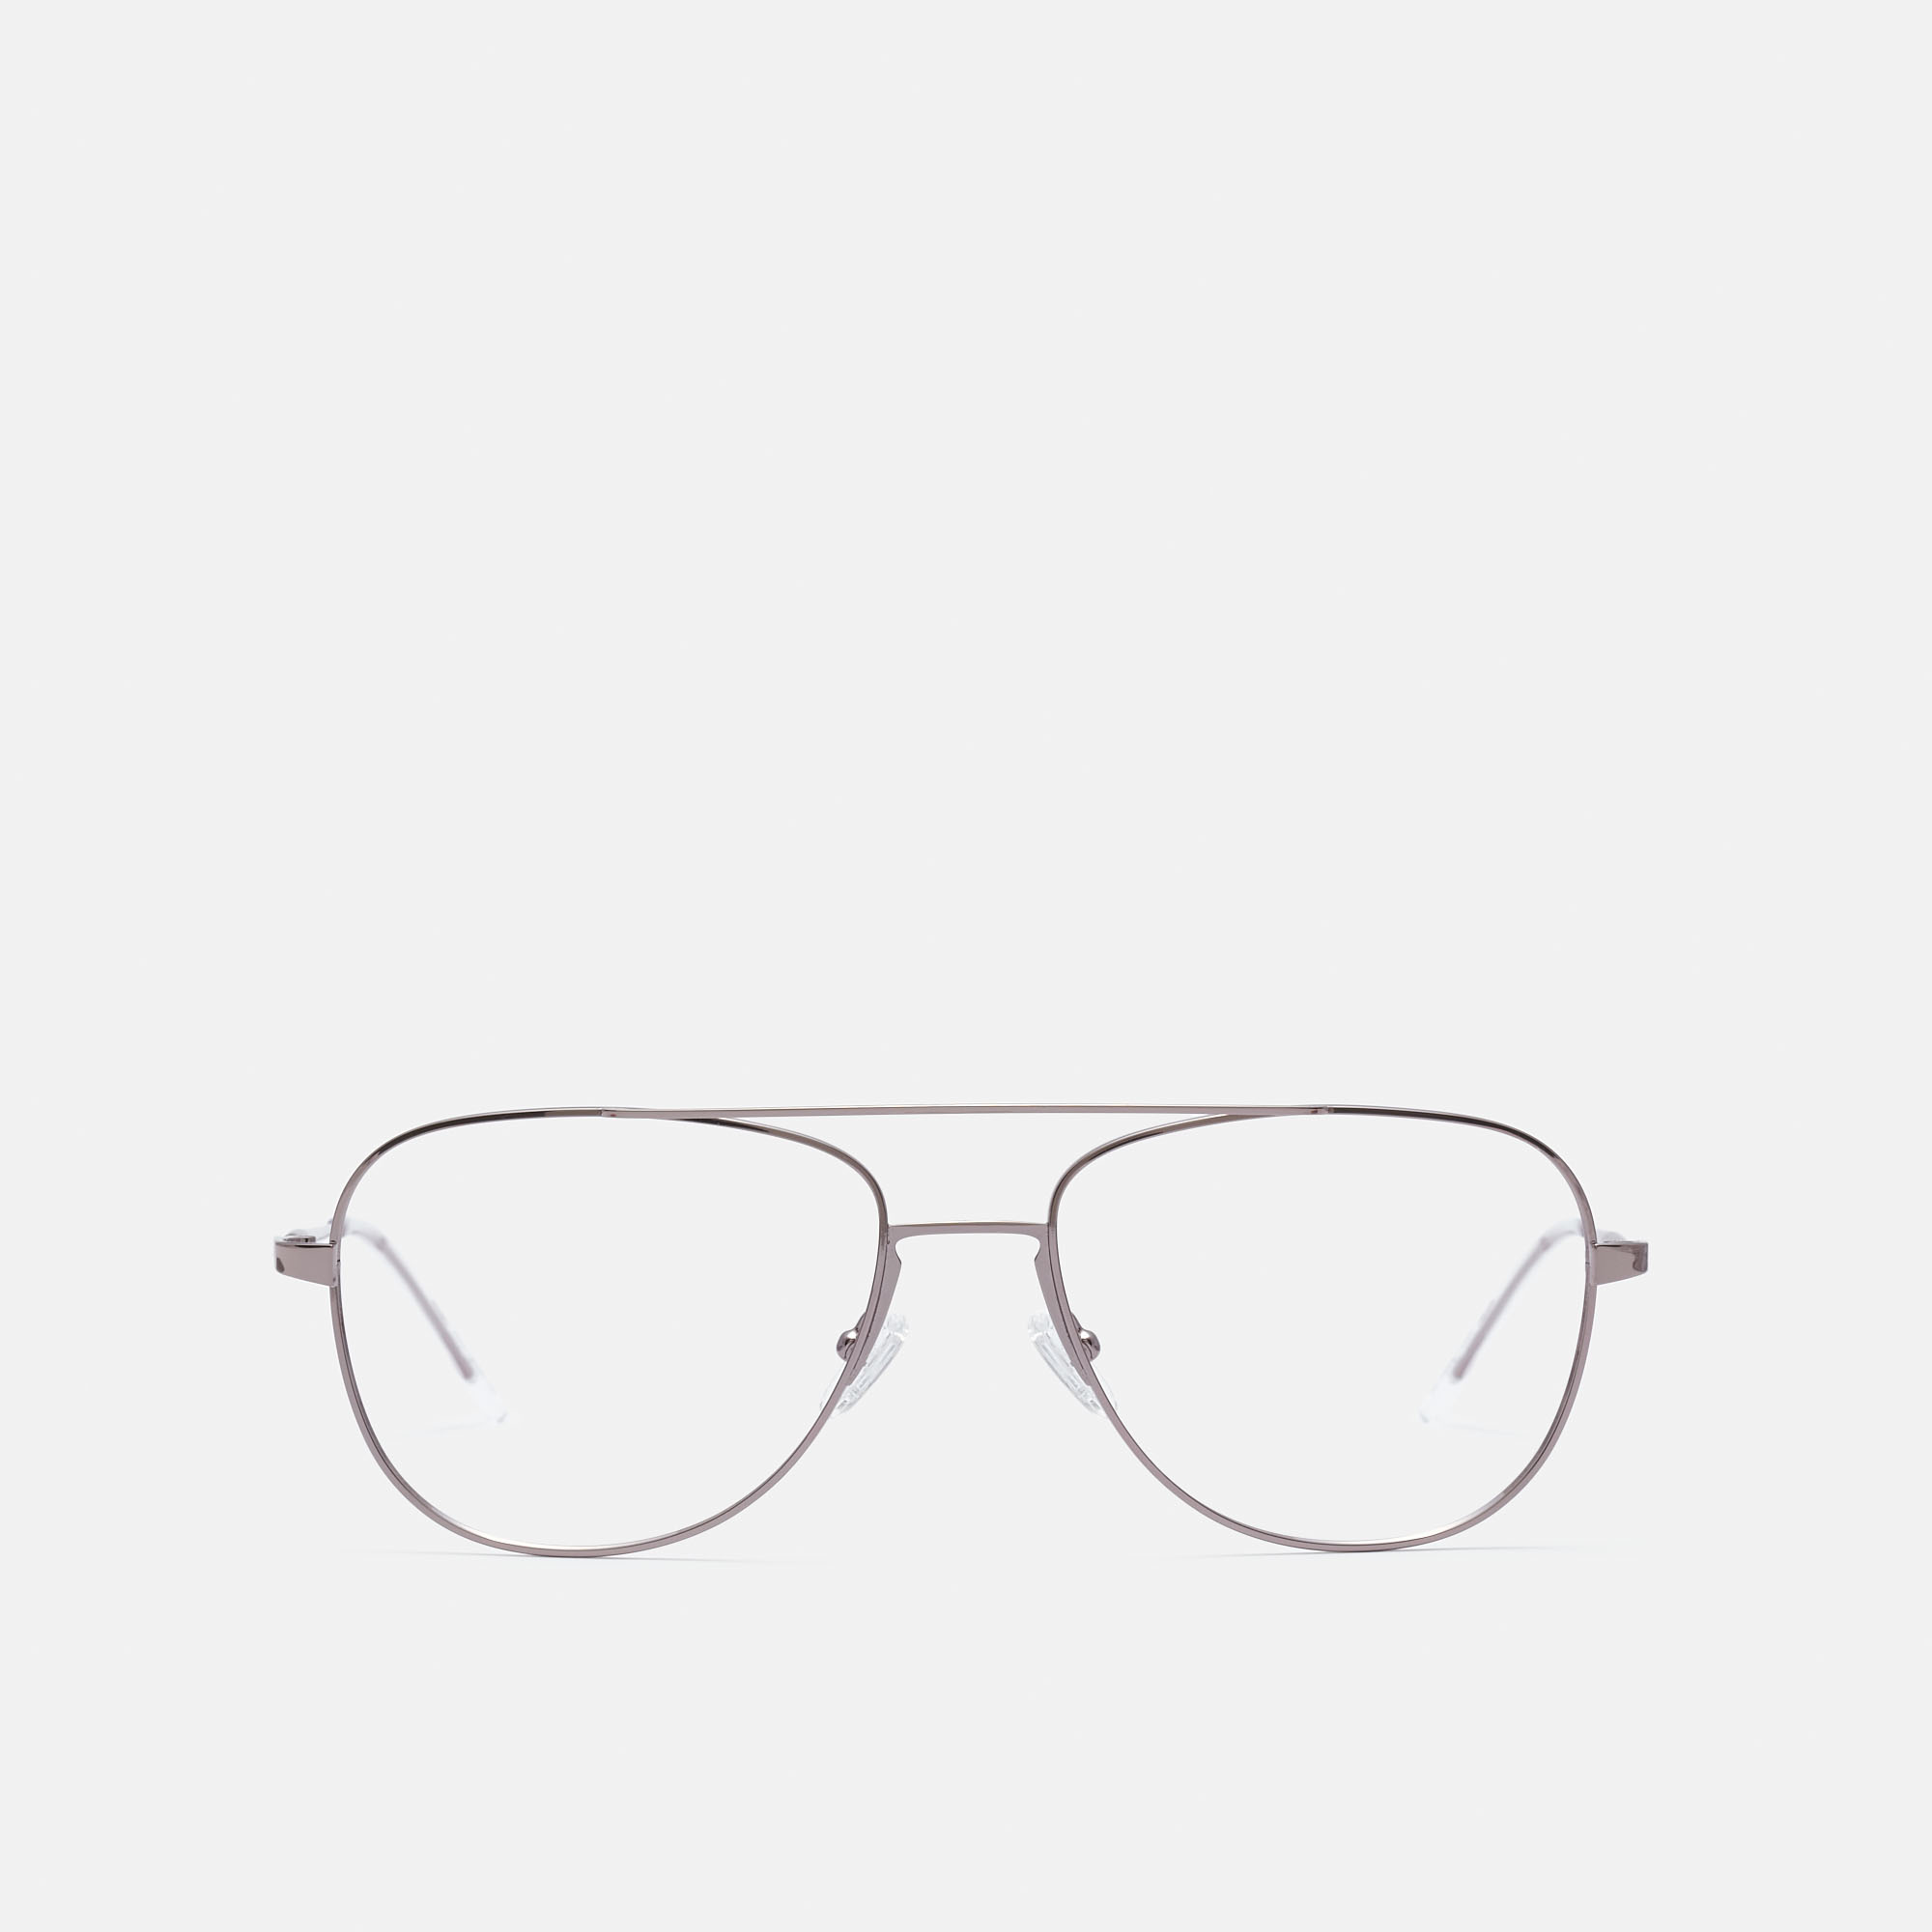 Comprar gafas progresivas para hombre online │Miller & Marc